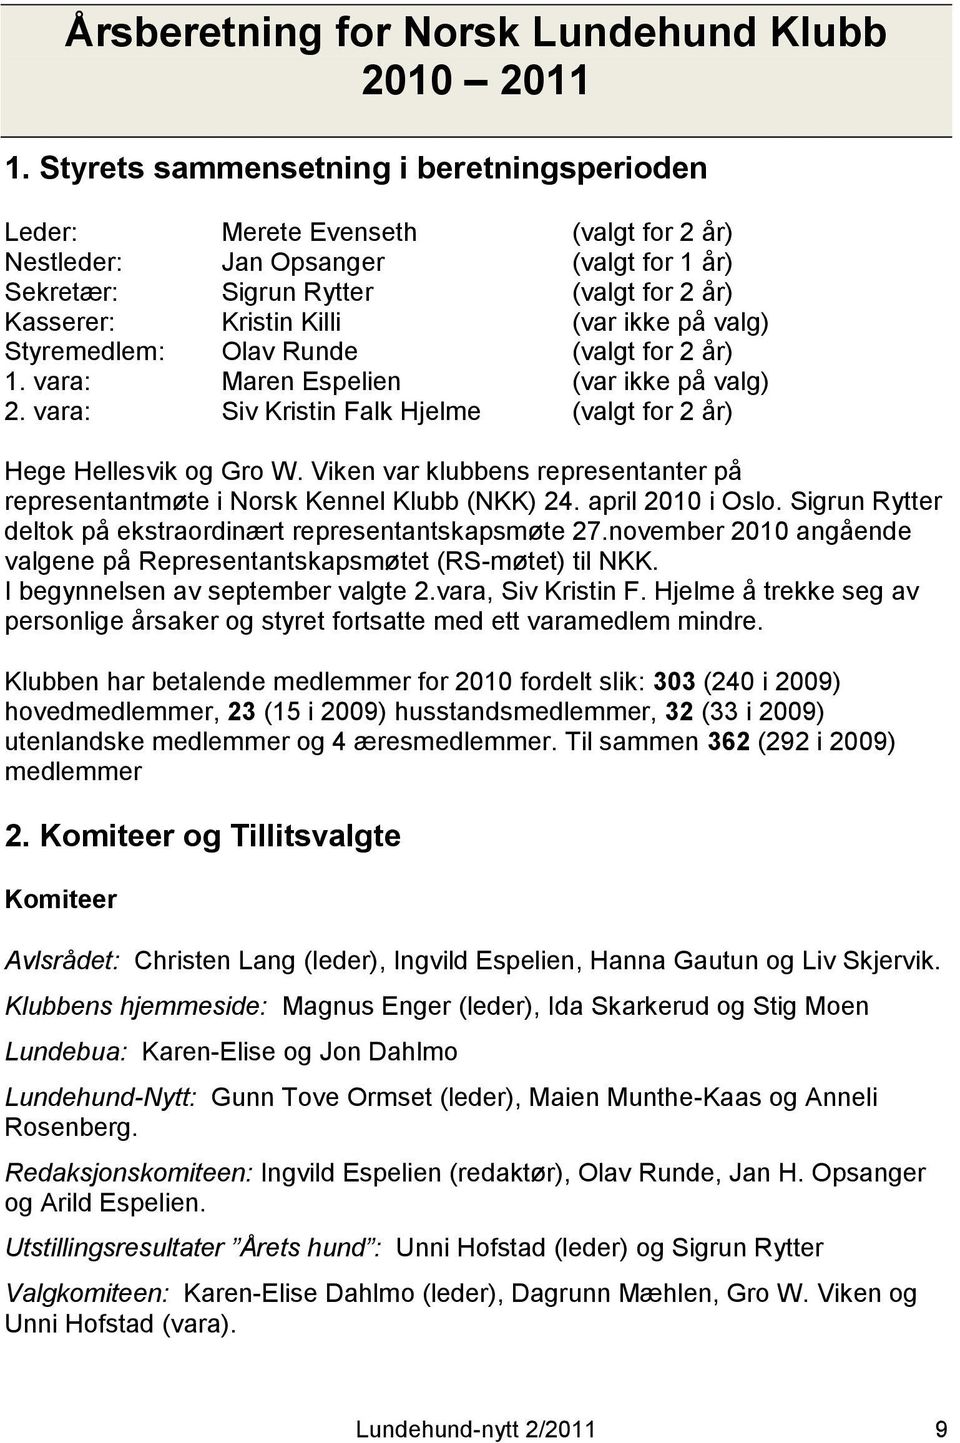 på valg) Styremedlem: Olav Runde (valgt for 2 år) 1. vara: Maren Espelien (var ikke på valg) 2. vara: Siv Kristin Falk Hjelme (valgt for 2 år) Hege Hellesvik og Gro W.